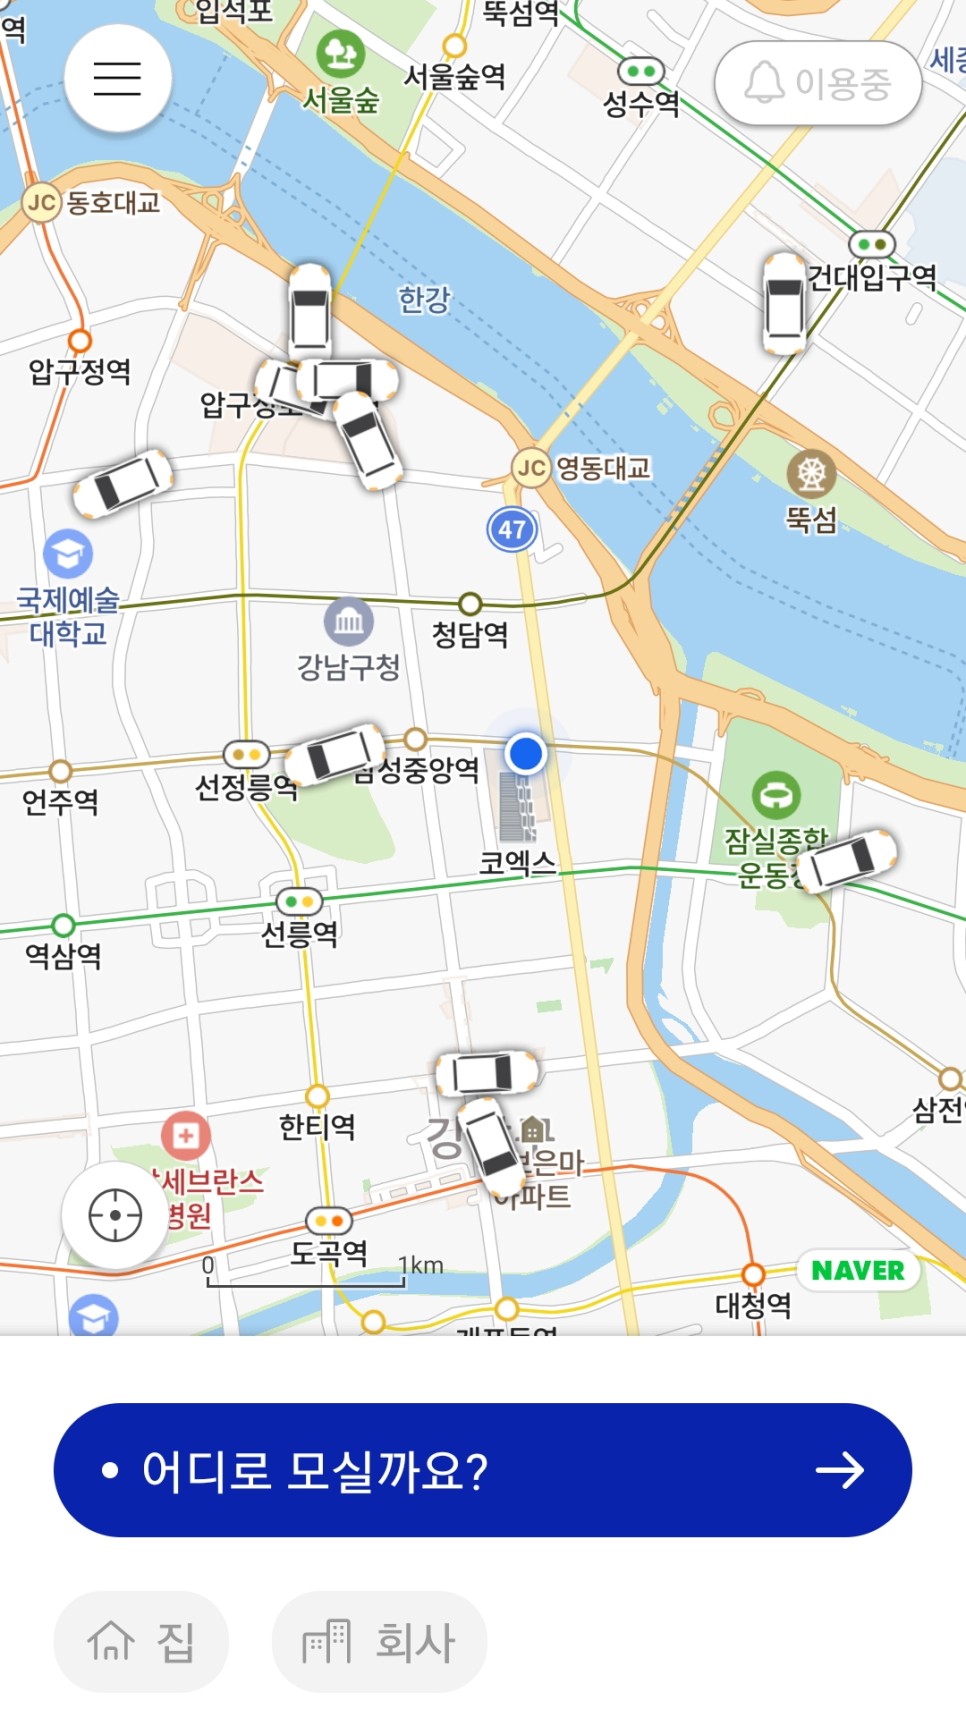 아이엠택시 쿠폰 정리 친구초대 이벤트 6638G7 +탑승후기